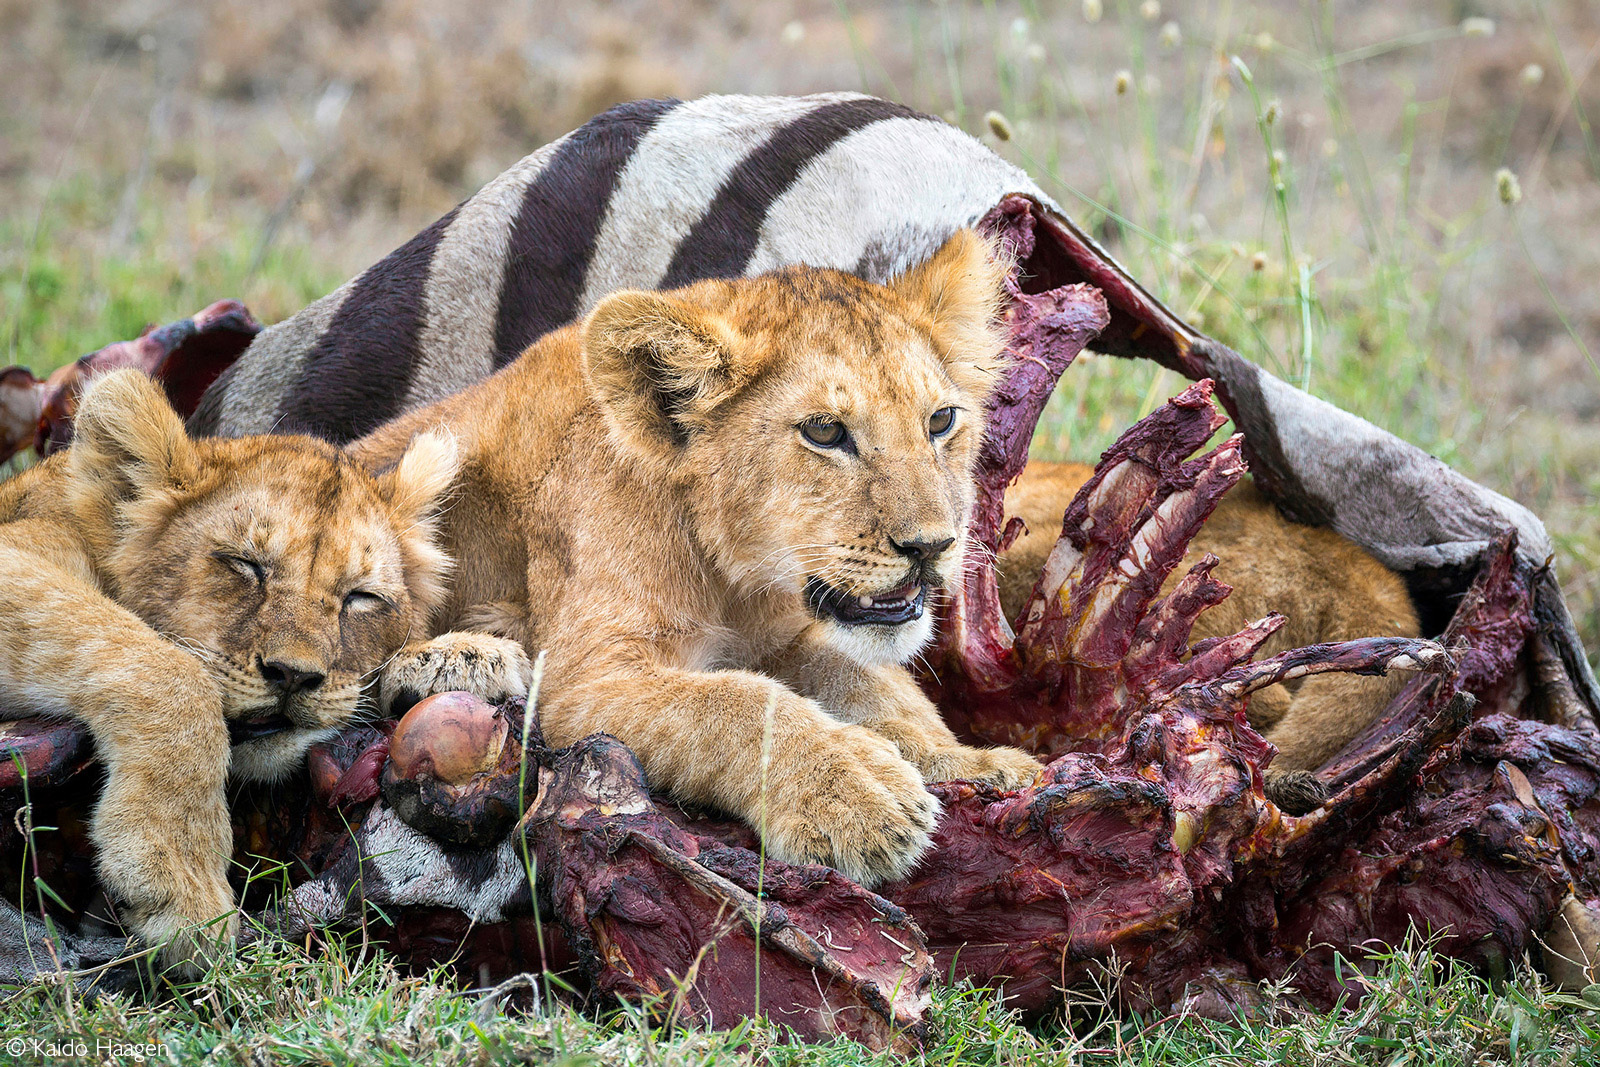 Lion cubs rest after having a zebra meal. Serengeti National Park, Tanzania © Kaido Haagen